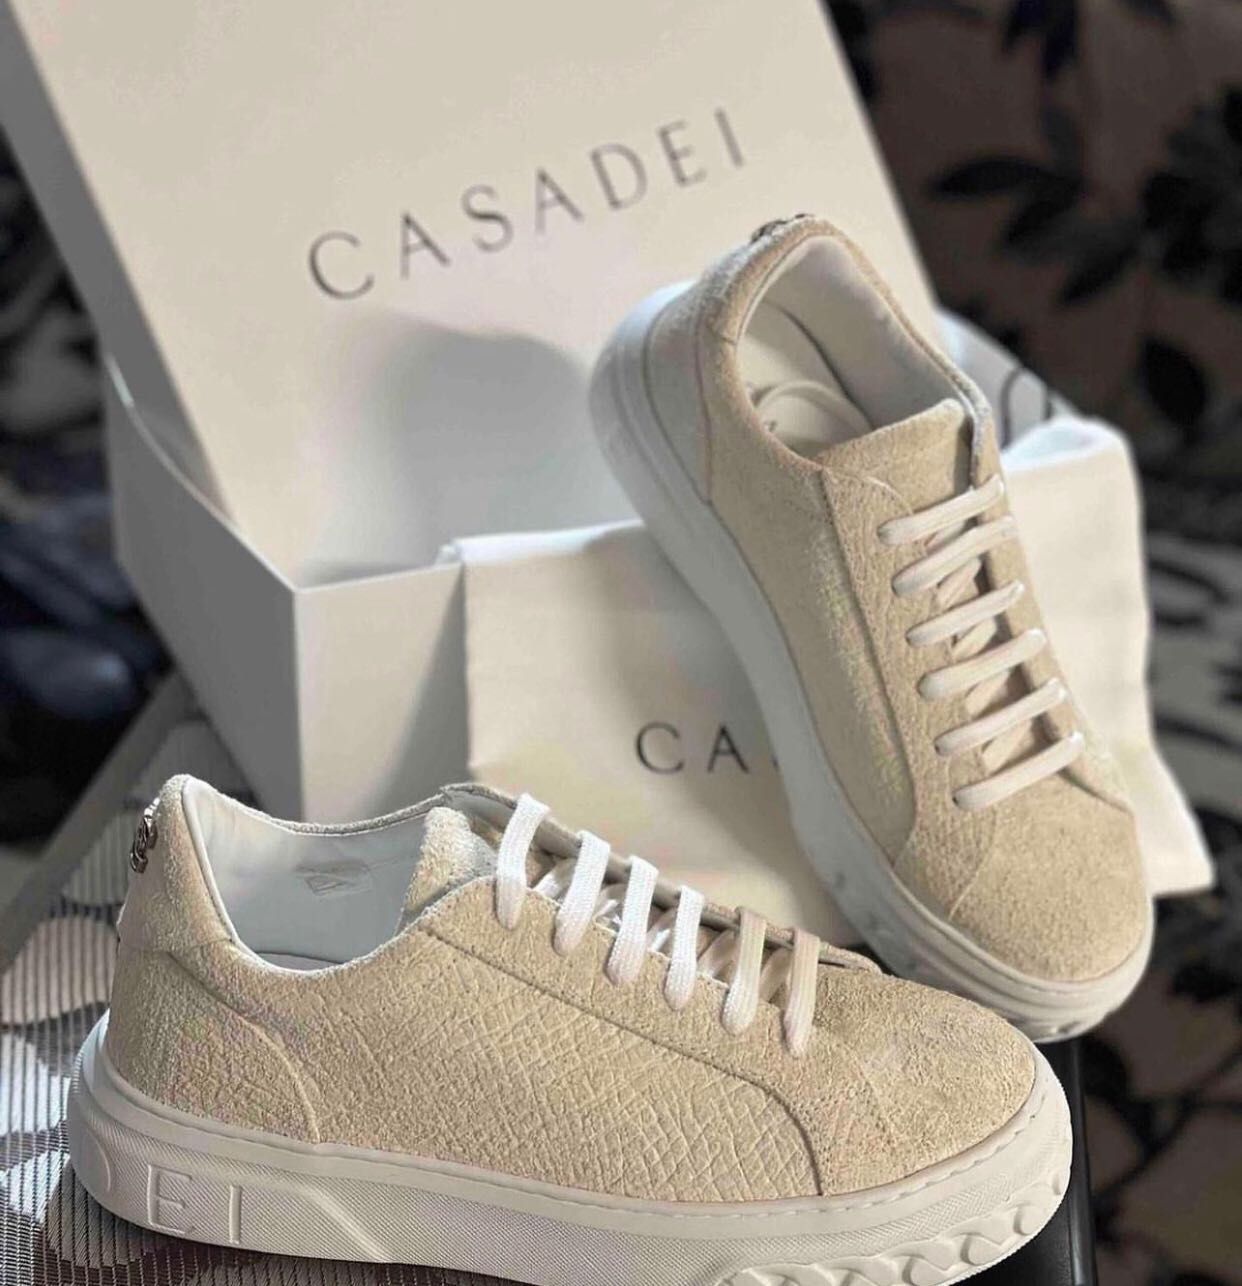 Новые кроссовки, кеды, бренд Casadei , 38,5 размер.Оригинал!